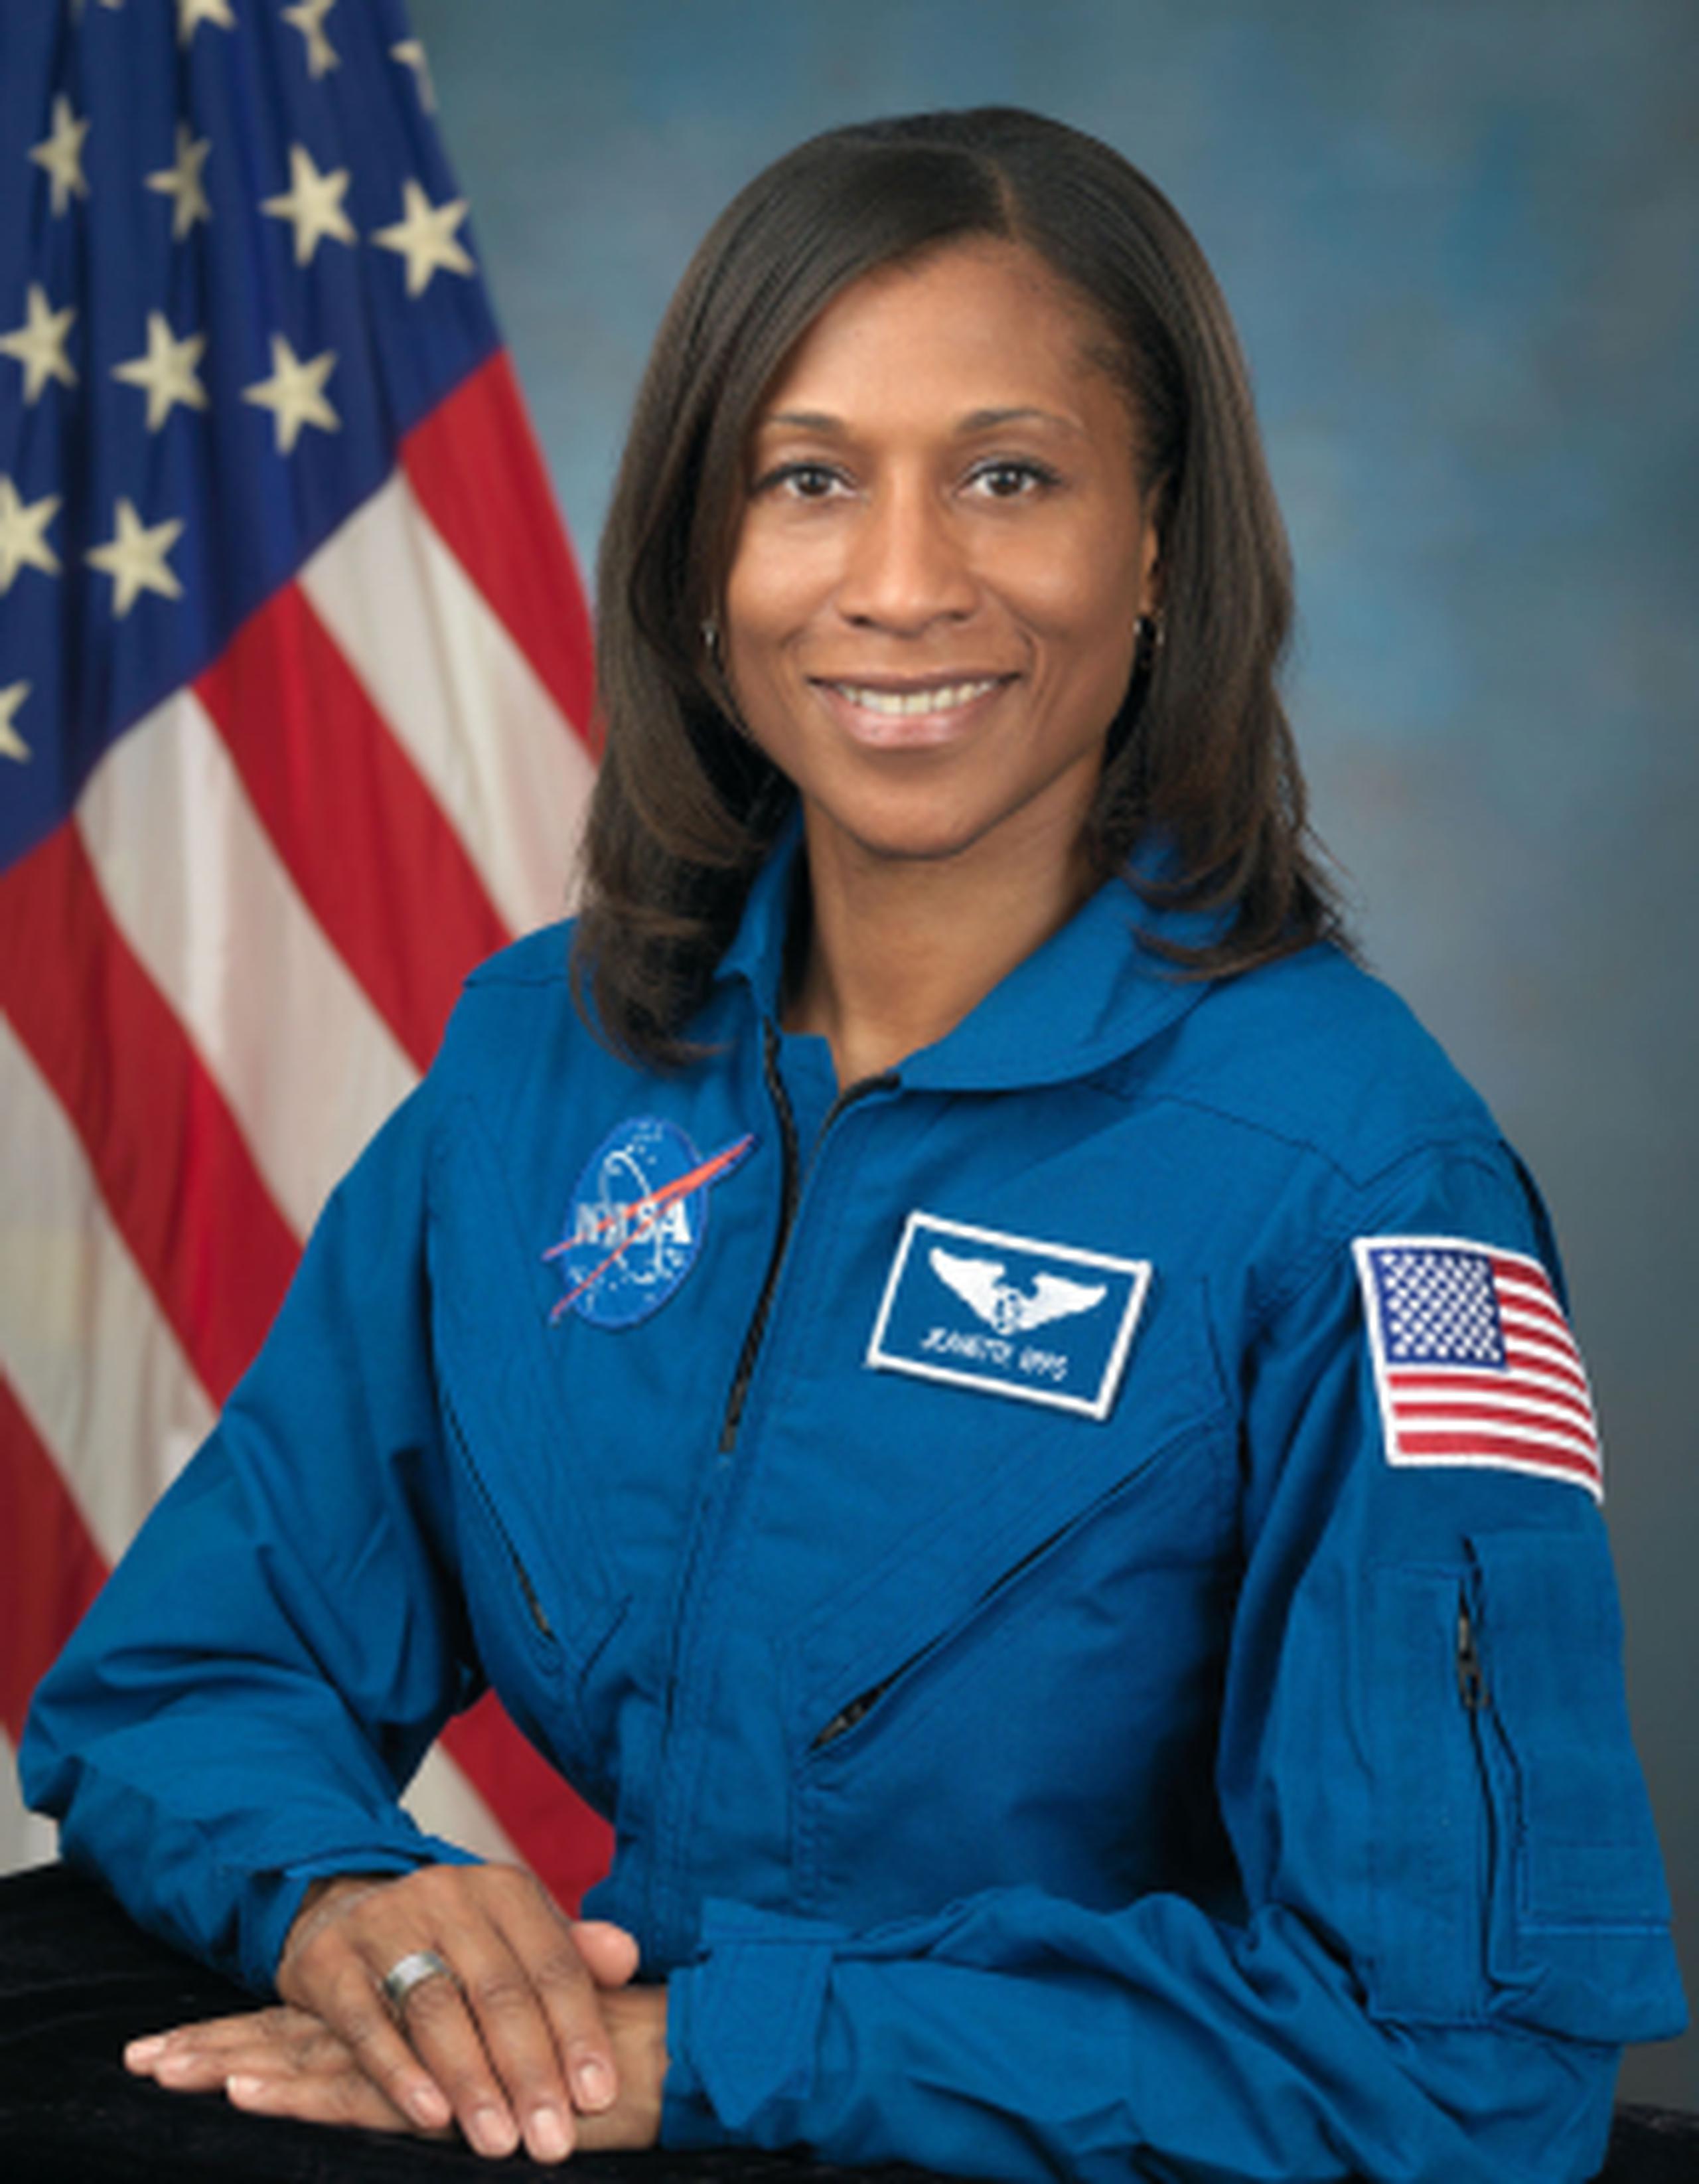 Jeanette Epps. (NASA)